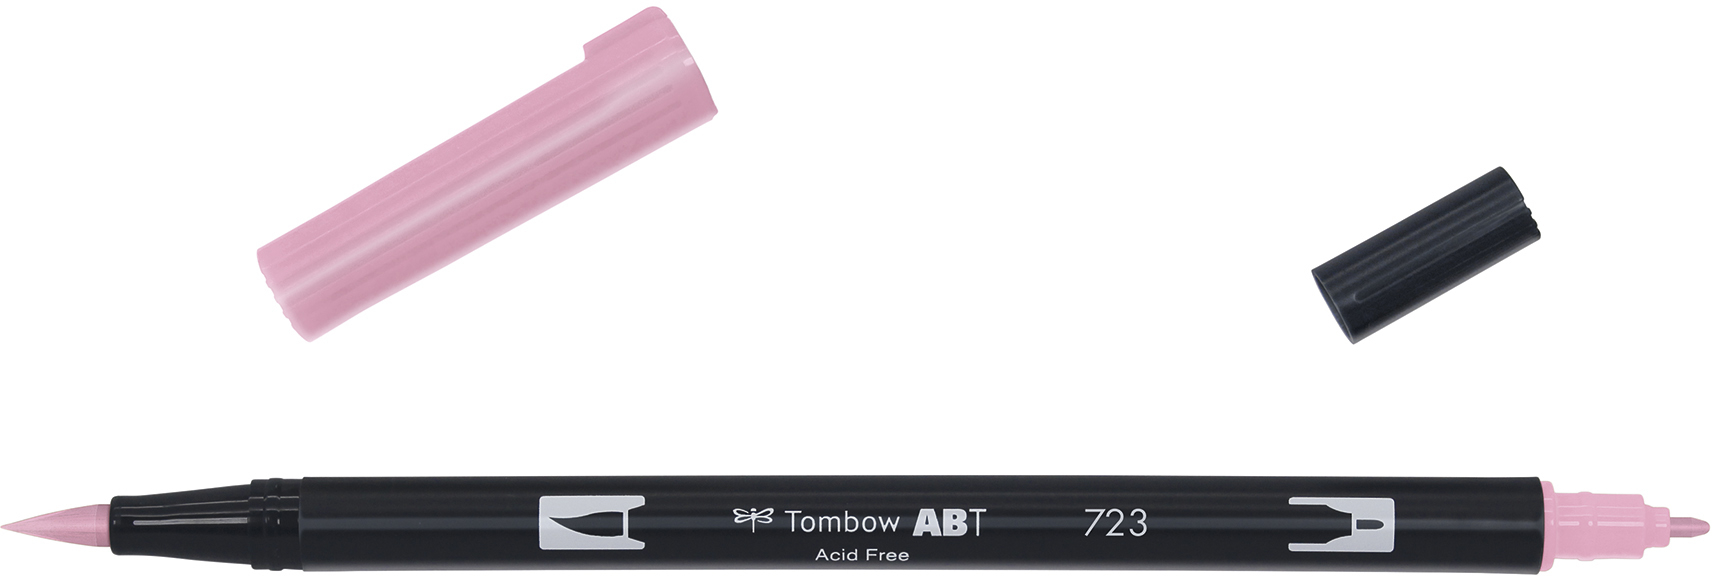 TOMBOW Dual Brush Pen ABT 723 pink pink